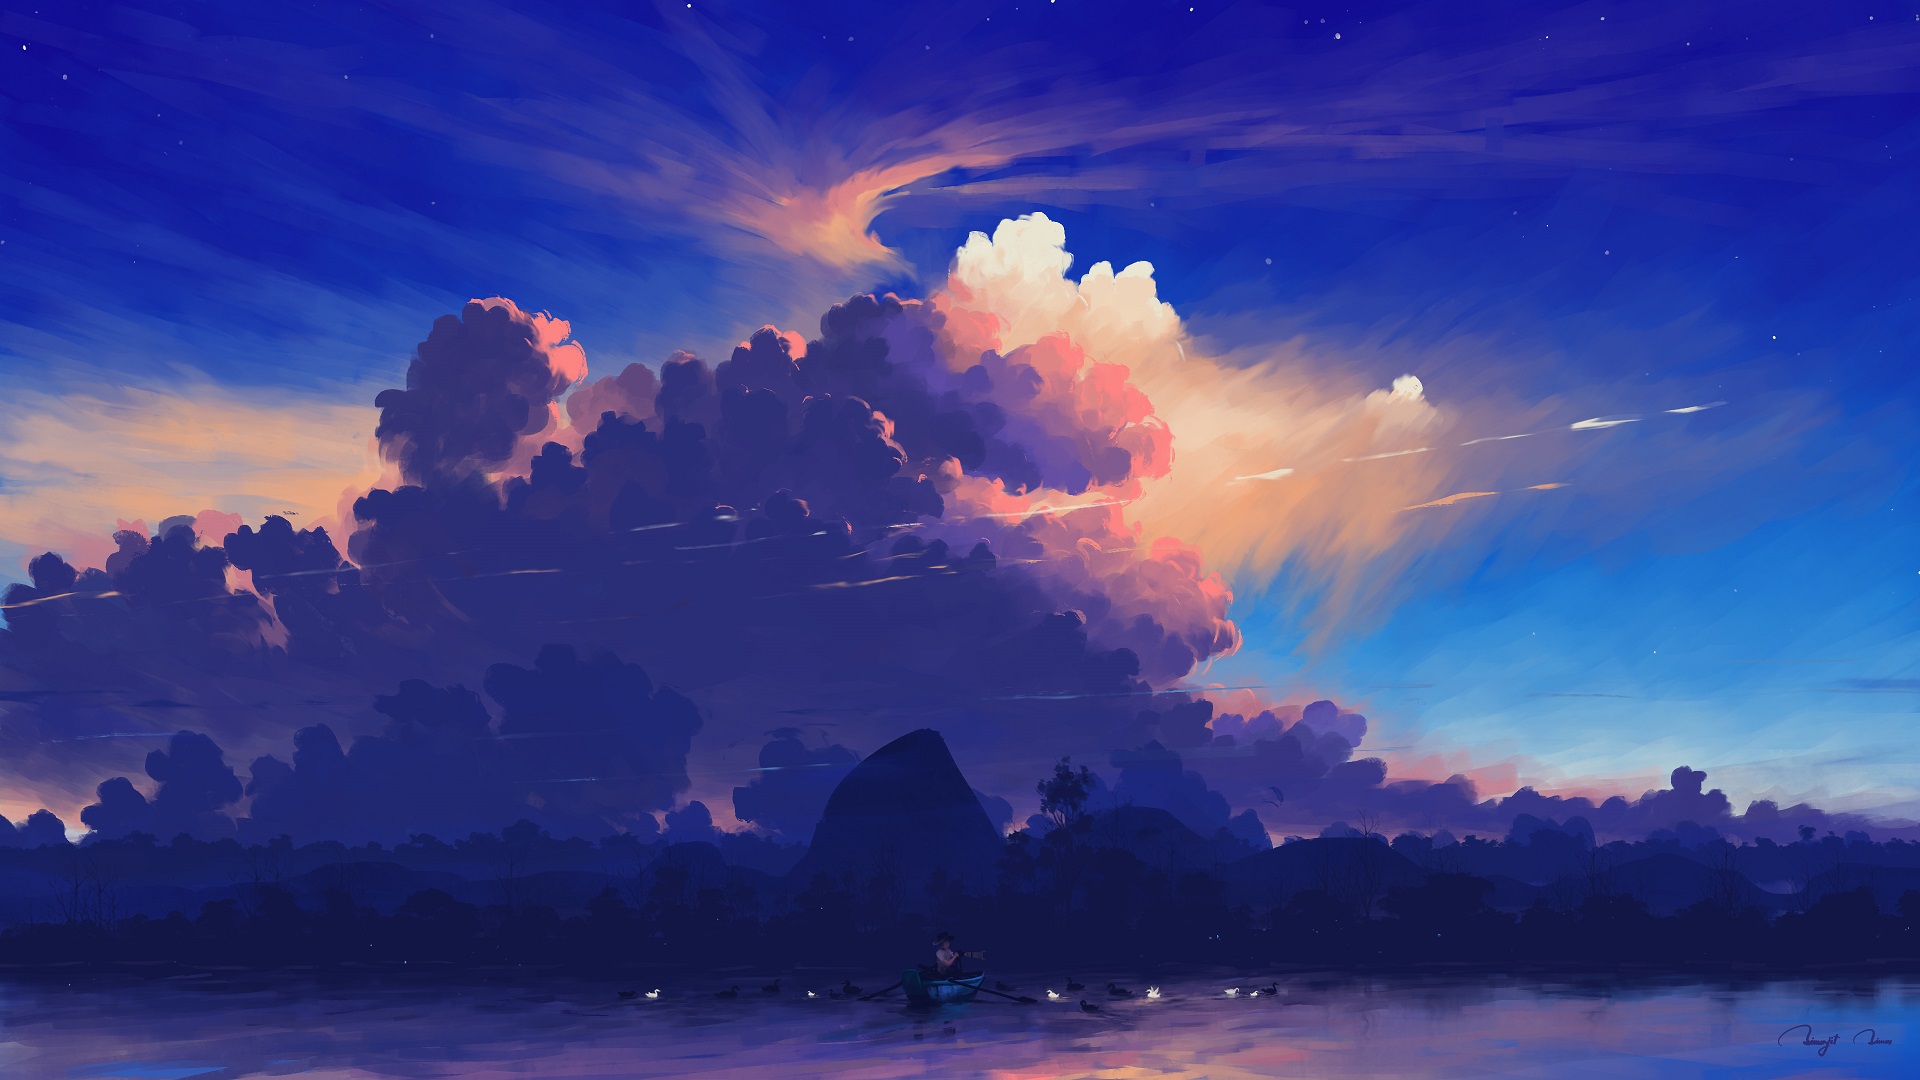 General 1920x1080 digital painting landscape sky clouds lake boat birds BisBiswas digital art watermarked